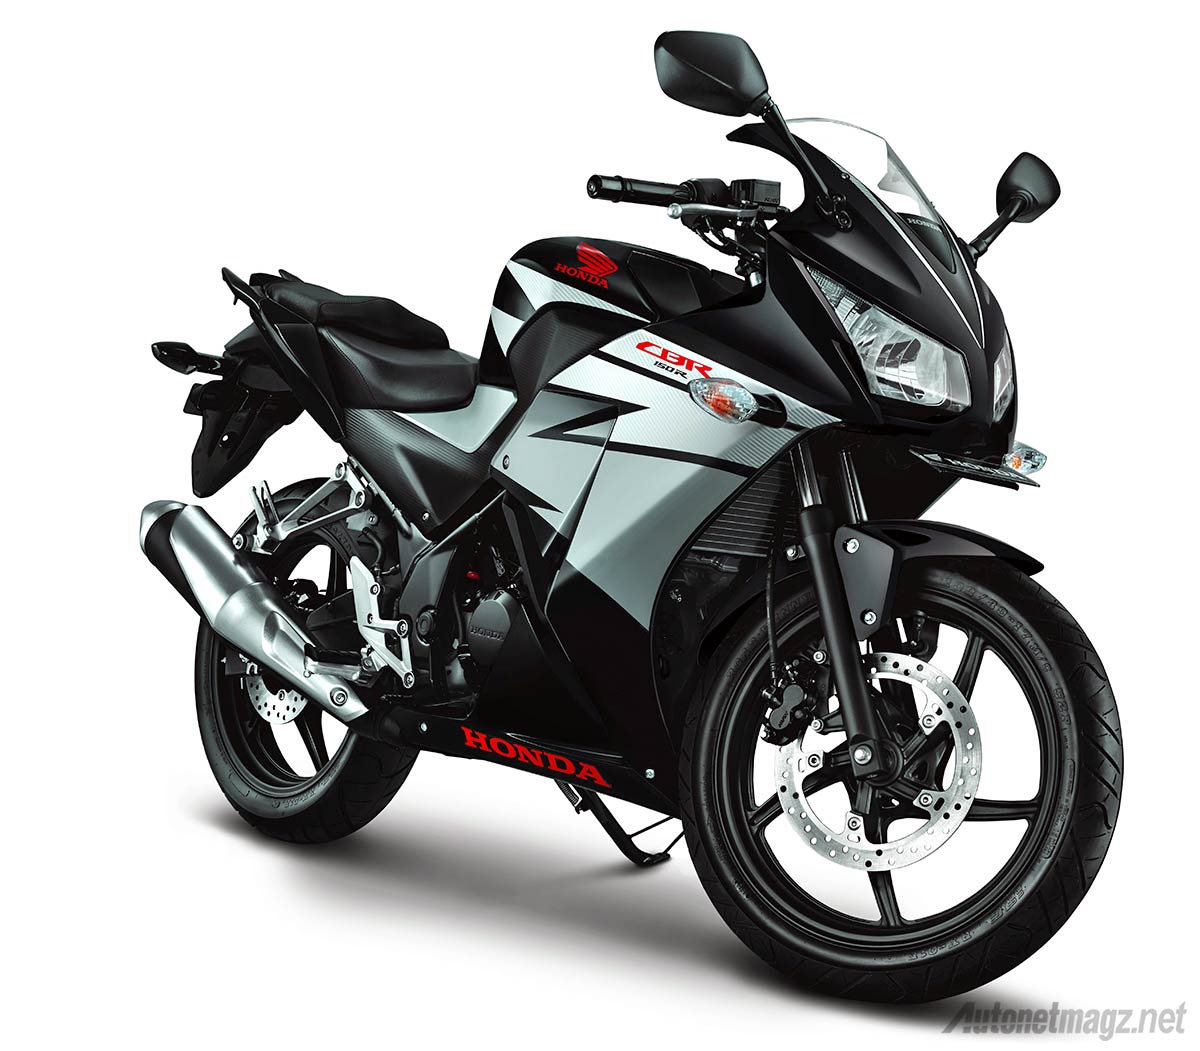 Honda, Honda CBR150R lokal 2014 warna hitam black: Harga Honda CBR 150 R Lokal Lebih Murah Dari Yamaha R15